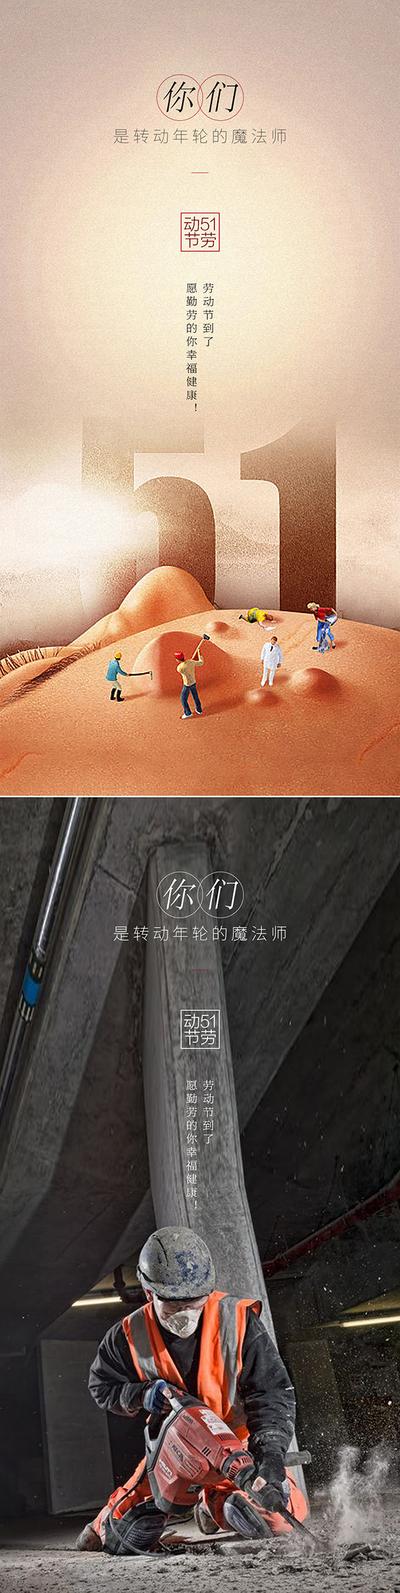 南门网 广告 海报 公历节日 五一 劳动节 51 系列